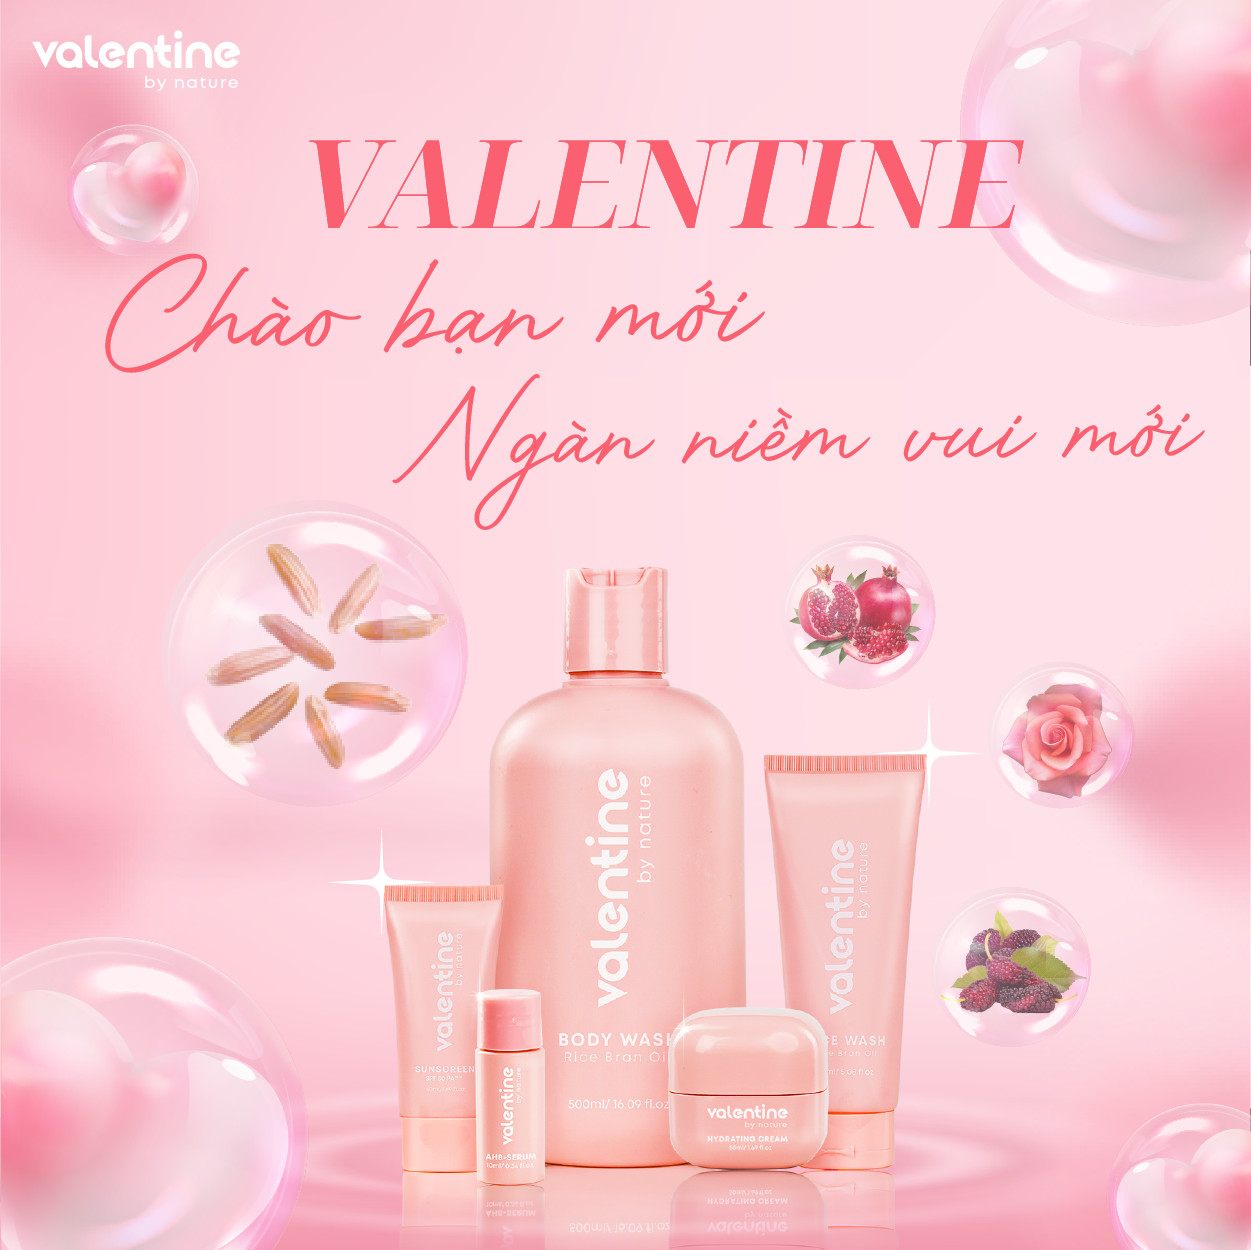 Các sản phẩm của Valentine đều sử dụng thành phần có nguồn gốc thiên nhiên rõ ràng và chất lượng cao